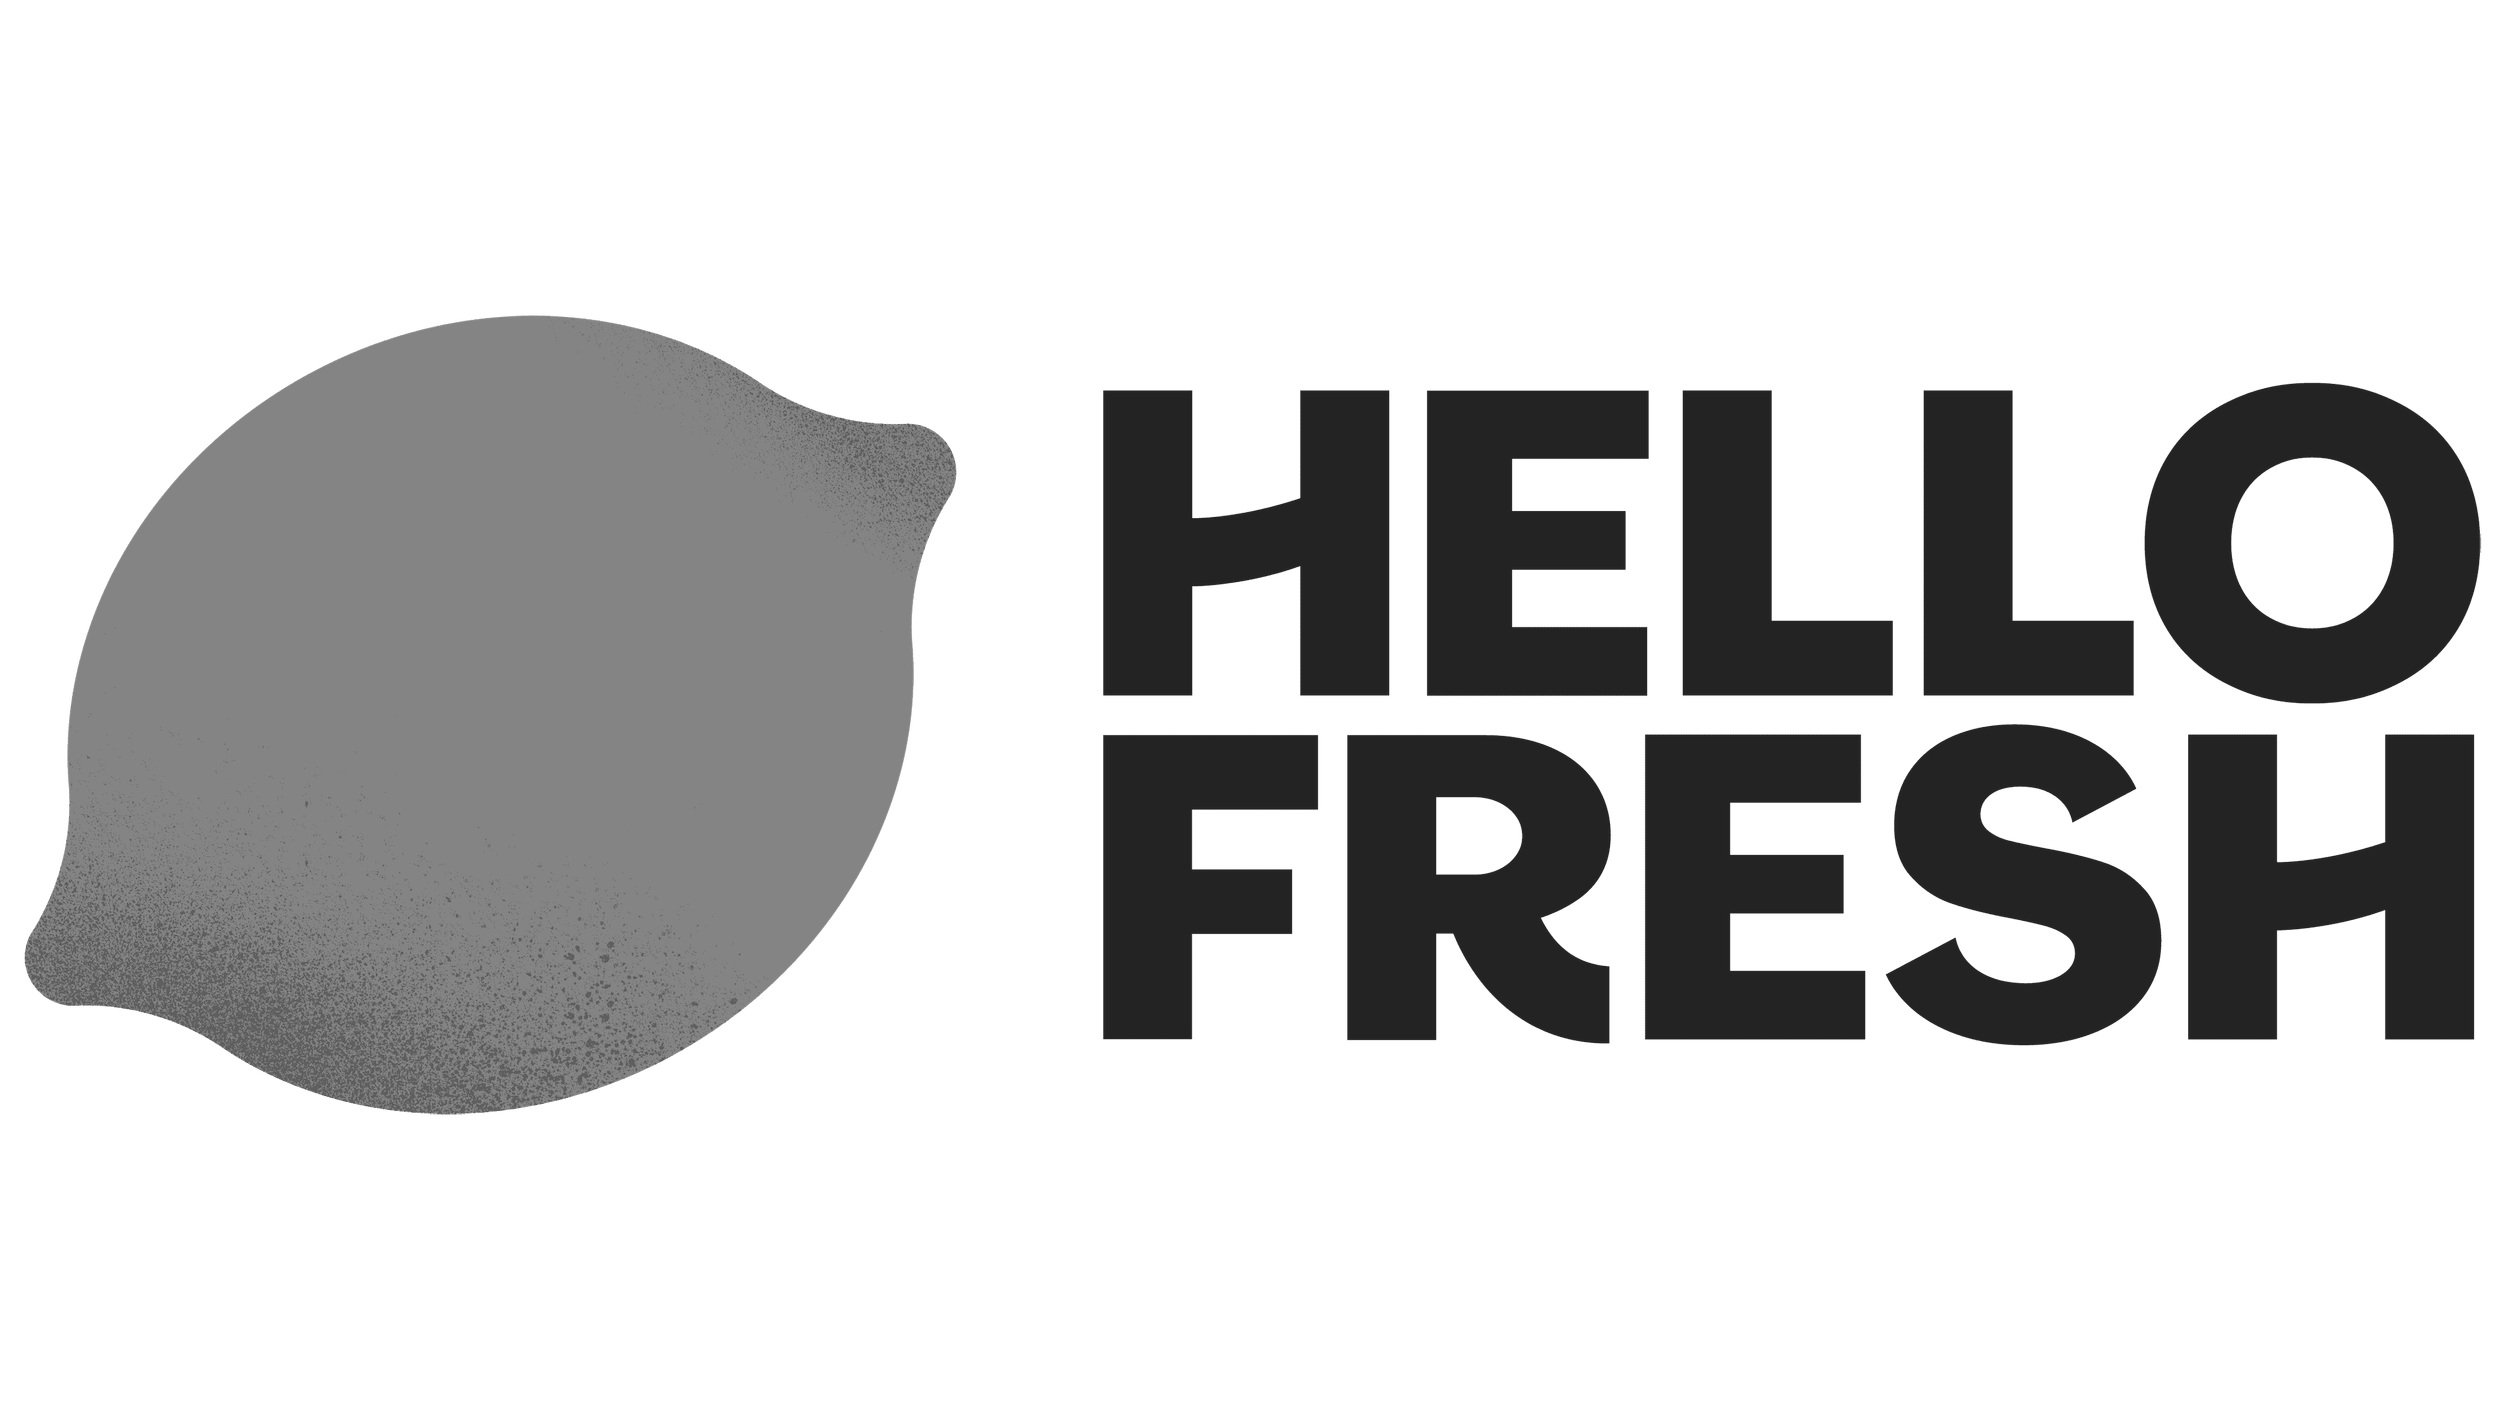 Hellofresh